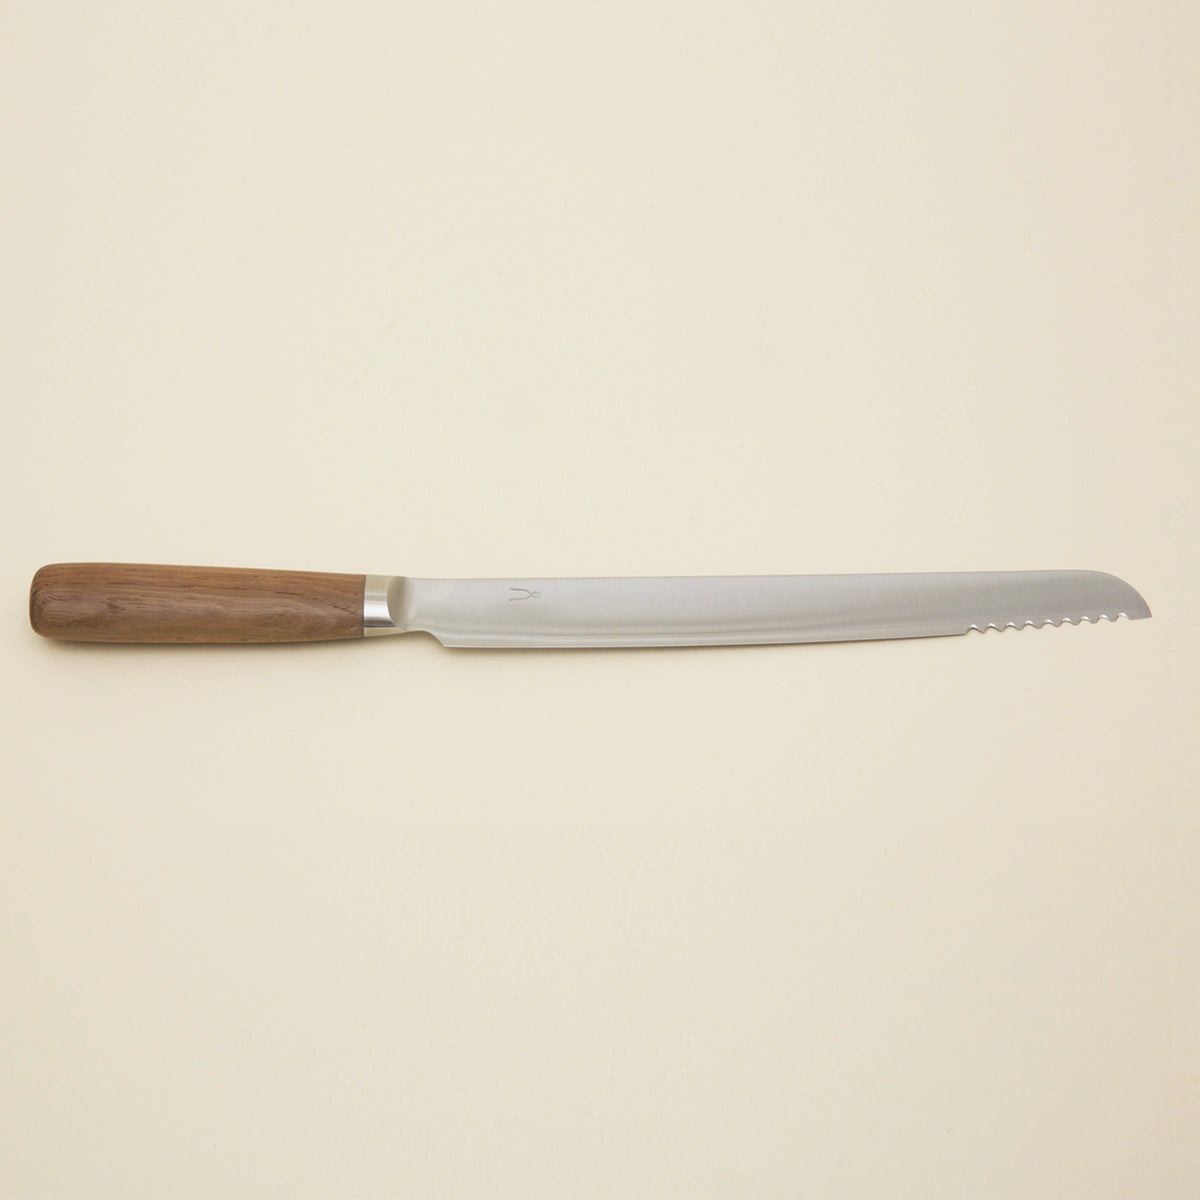 Japanese Bread Knife - HK1